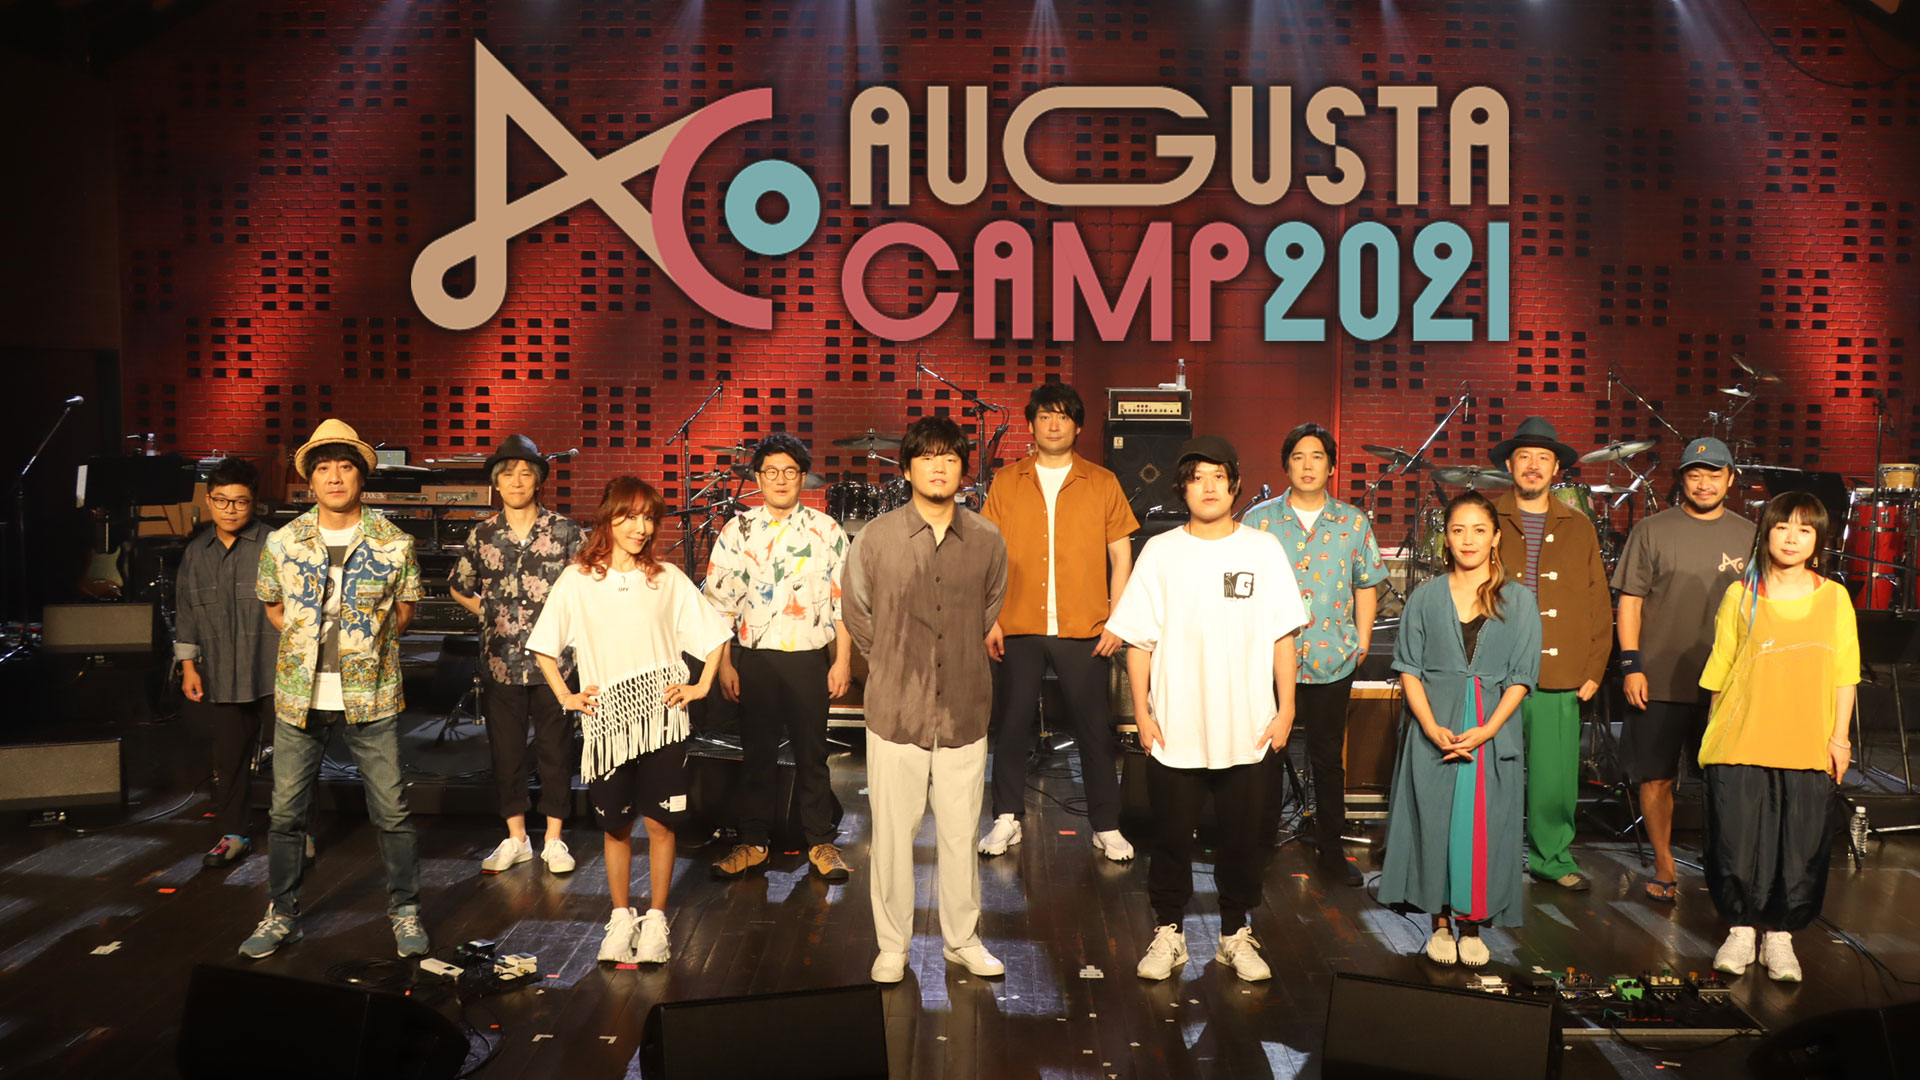 Augusta Camp 2021